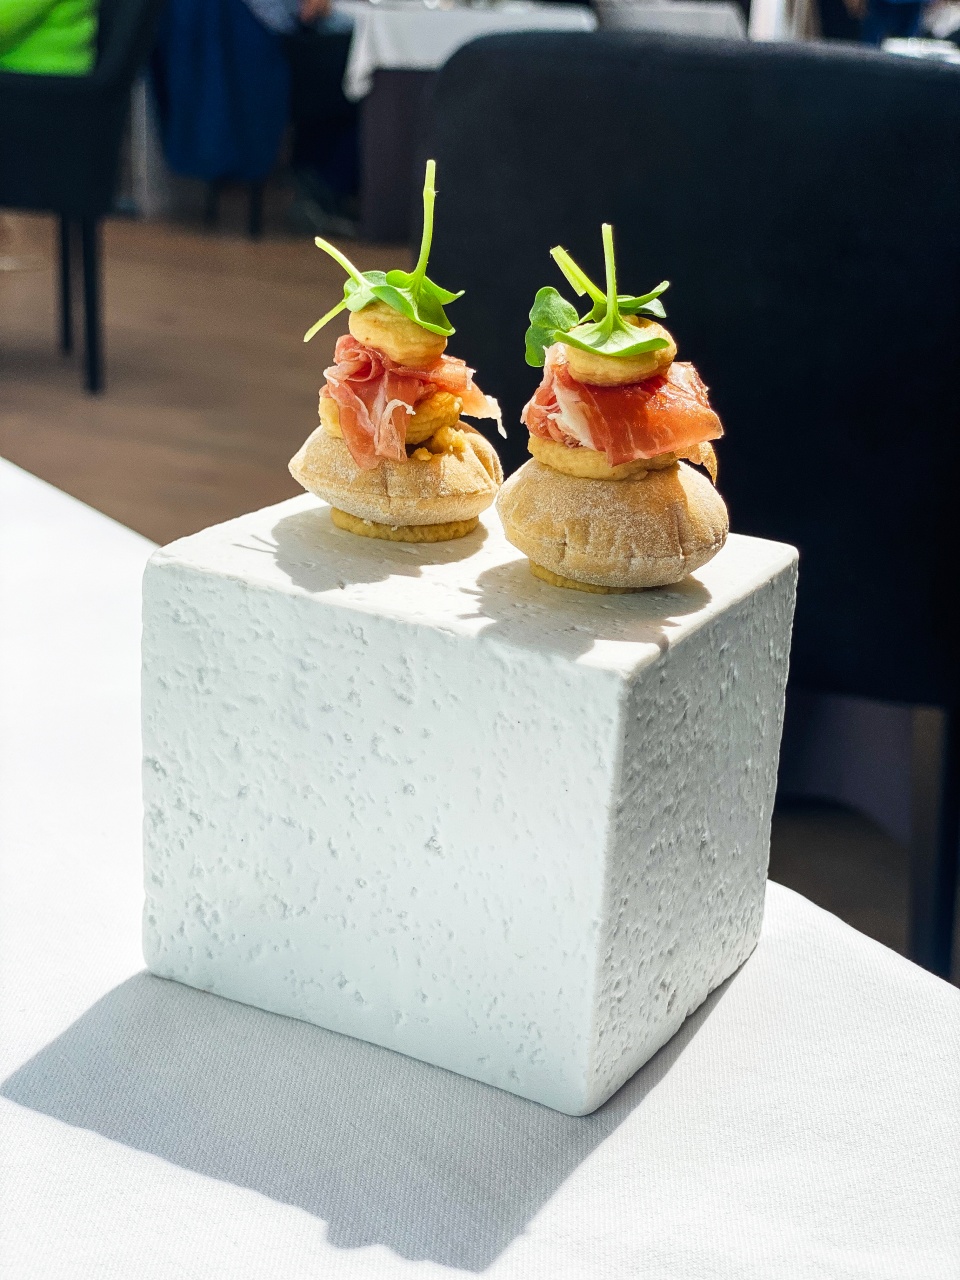 Een prachtige presentatie van verfijnde hapjes op een elegante schaal in restaurant De Bakermat, waarbij elk hapje zorgvuldig is bereid om een uitbarsting van smaak en textuur te bieden."
